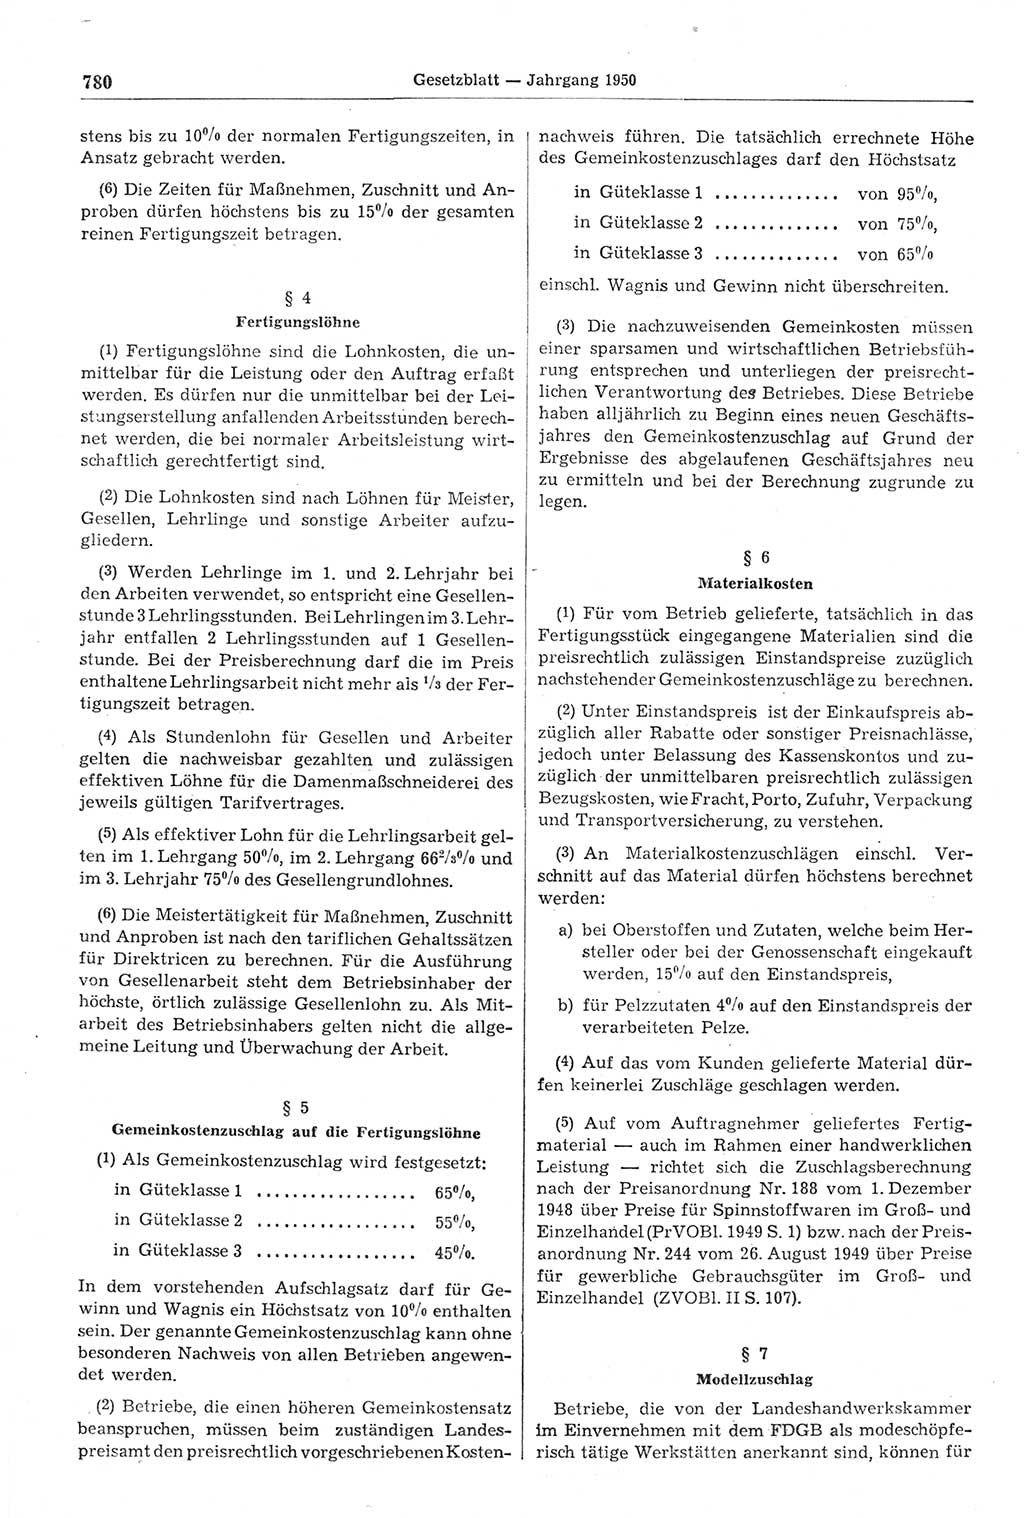 Gesetzblatt (GBl.) der Deutschen Demokratischen Republik (DDR) 1950, Seite 780 (GBl. DDR 1950, S. 780)